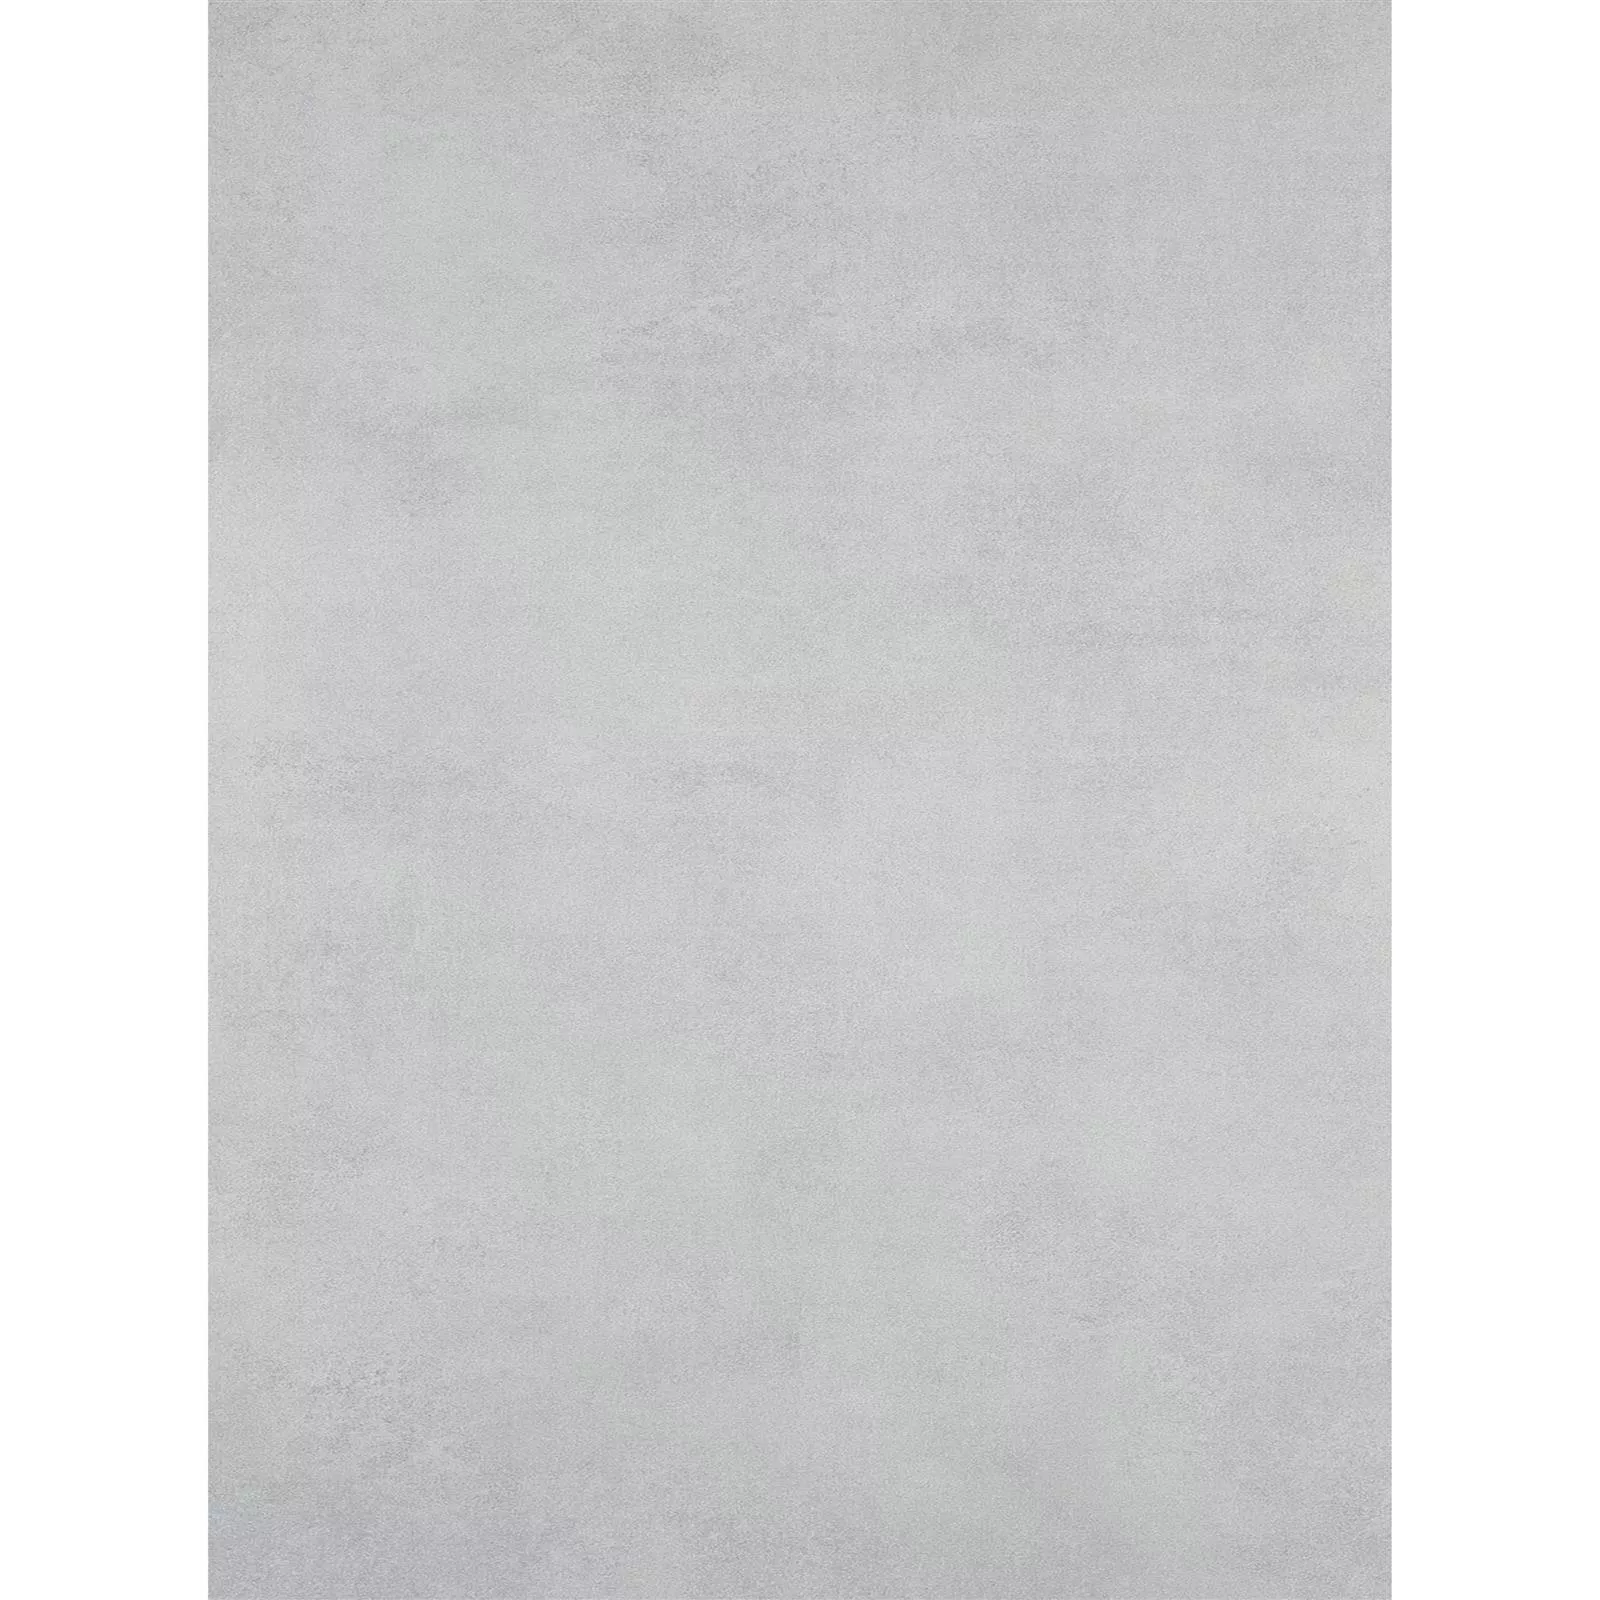 Πρότυπο Πλακάκι Δαπέδου Mainland Συγκεκριμένη Εμφάνιση Αμεμπτος 60x120cm Γκρί